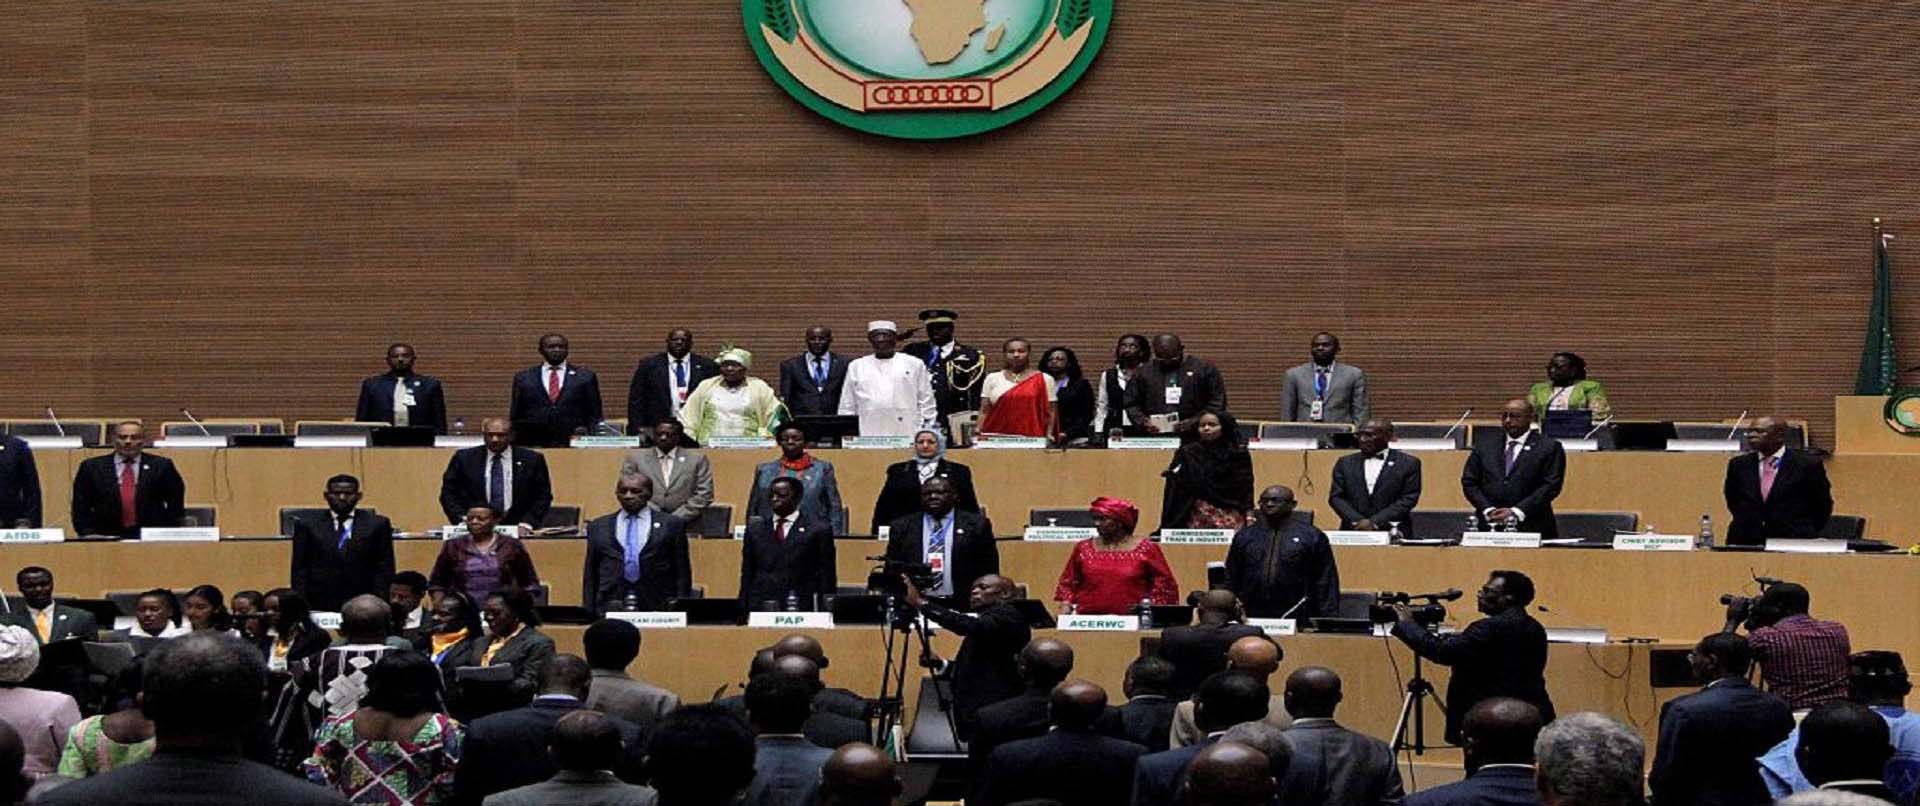 صورة الاتحاد الافريقي يعلق عضوية السودان وهذا هو السبب